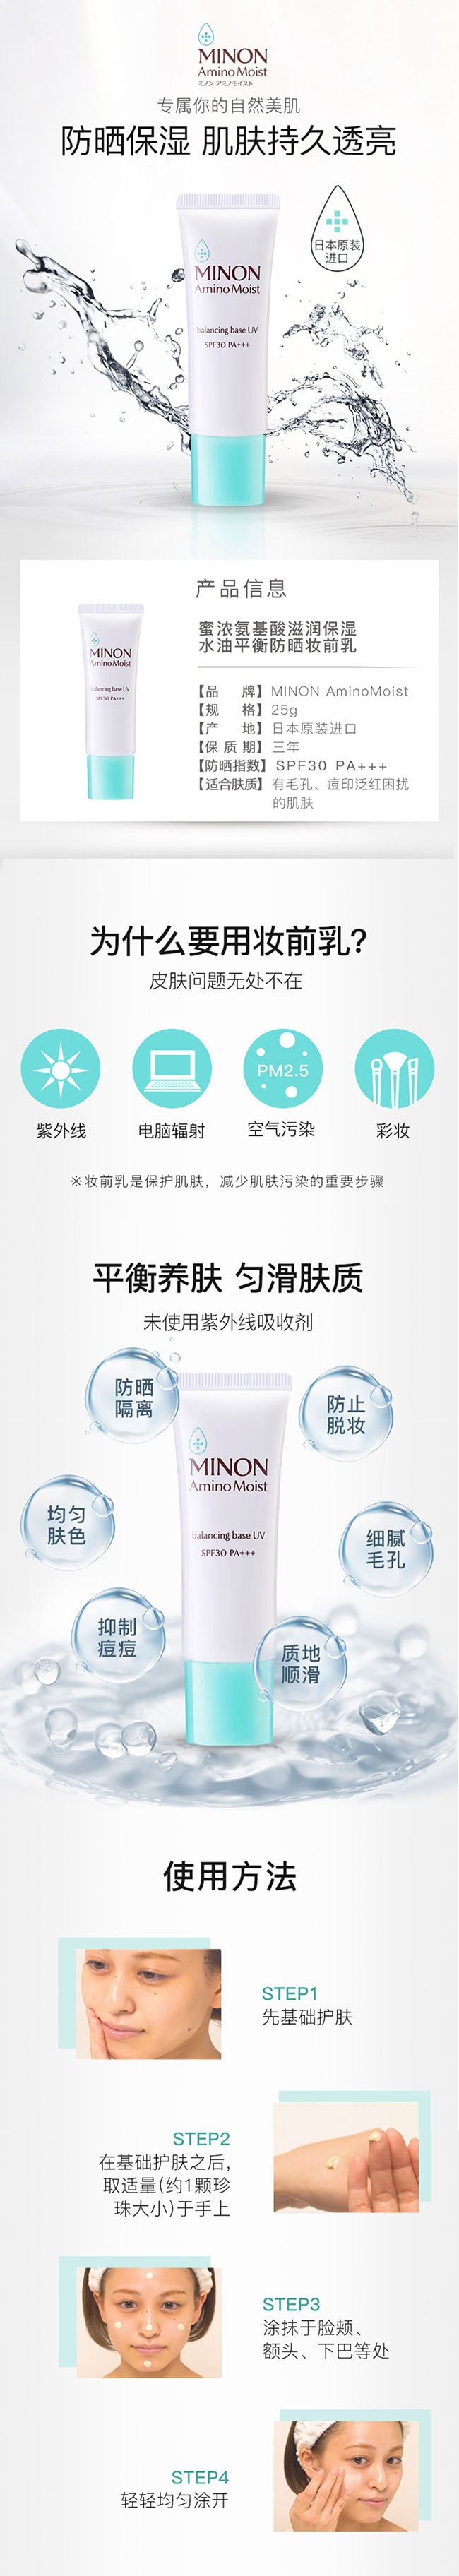 【日本直效郵件】MINON蜜濃 胺基酸控油保濕防曬妝前乳 SPF30/PA+++ 25g